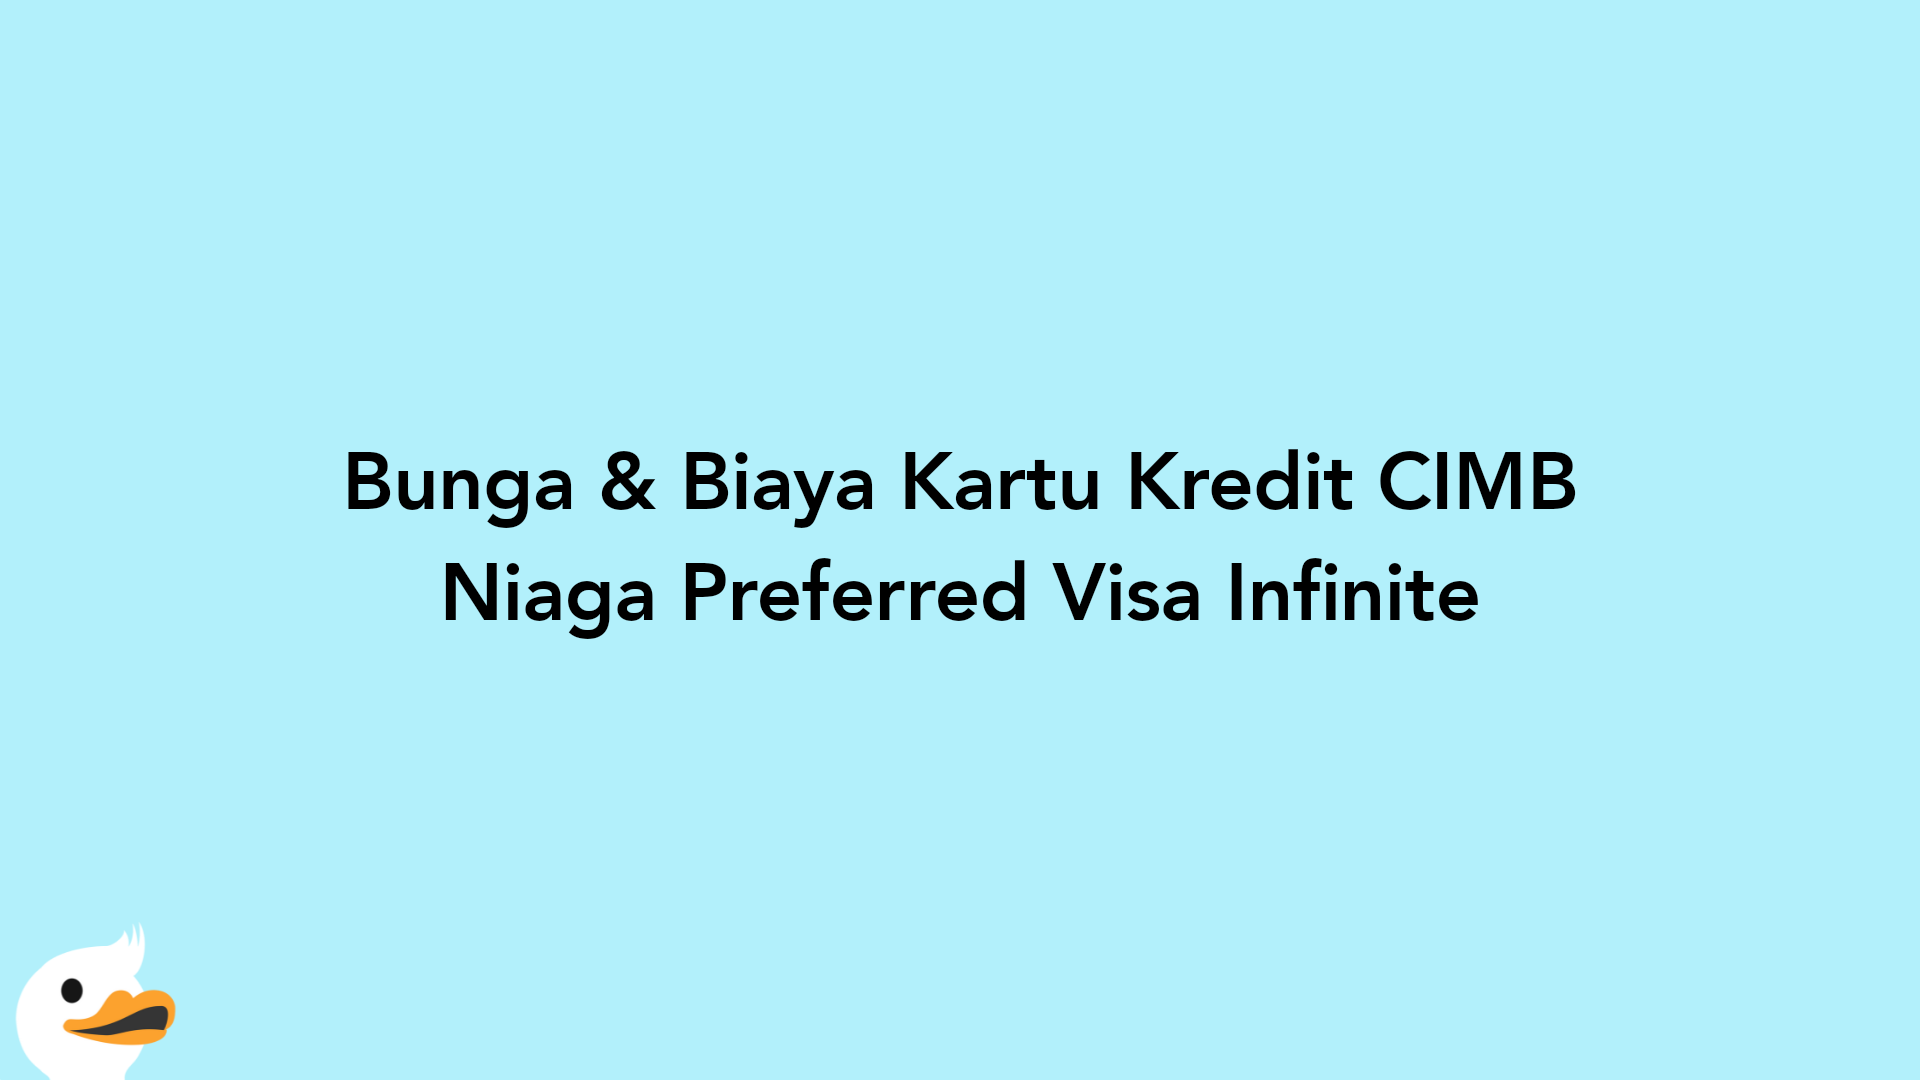 Bunga & Biaya Kartu Kredit CIMB Niaga Preferred Visa Infinite